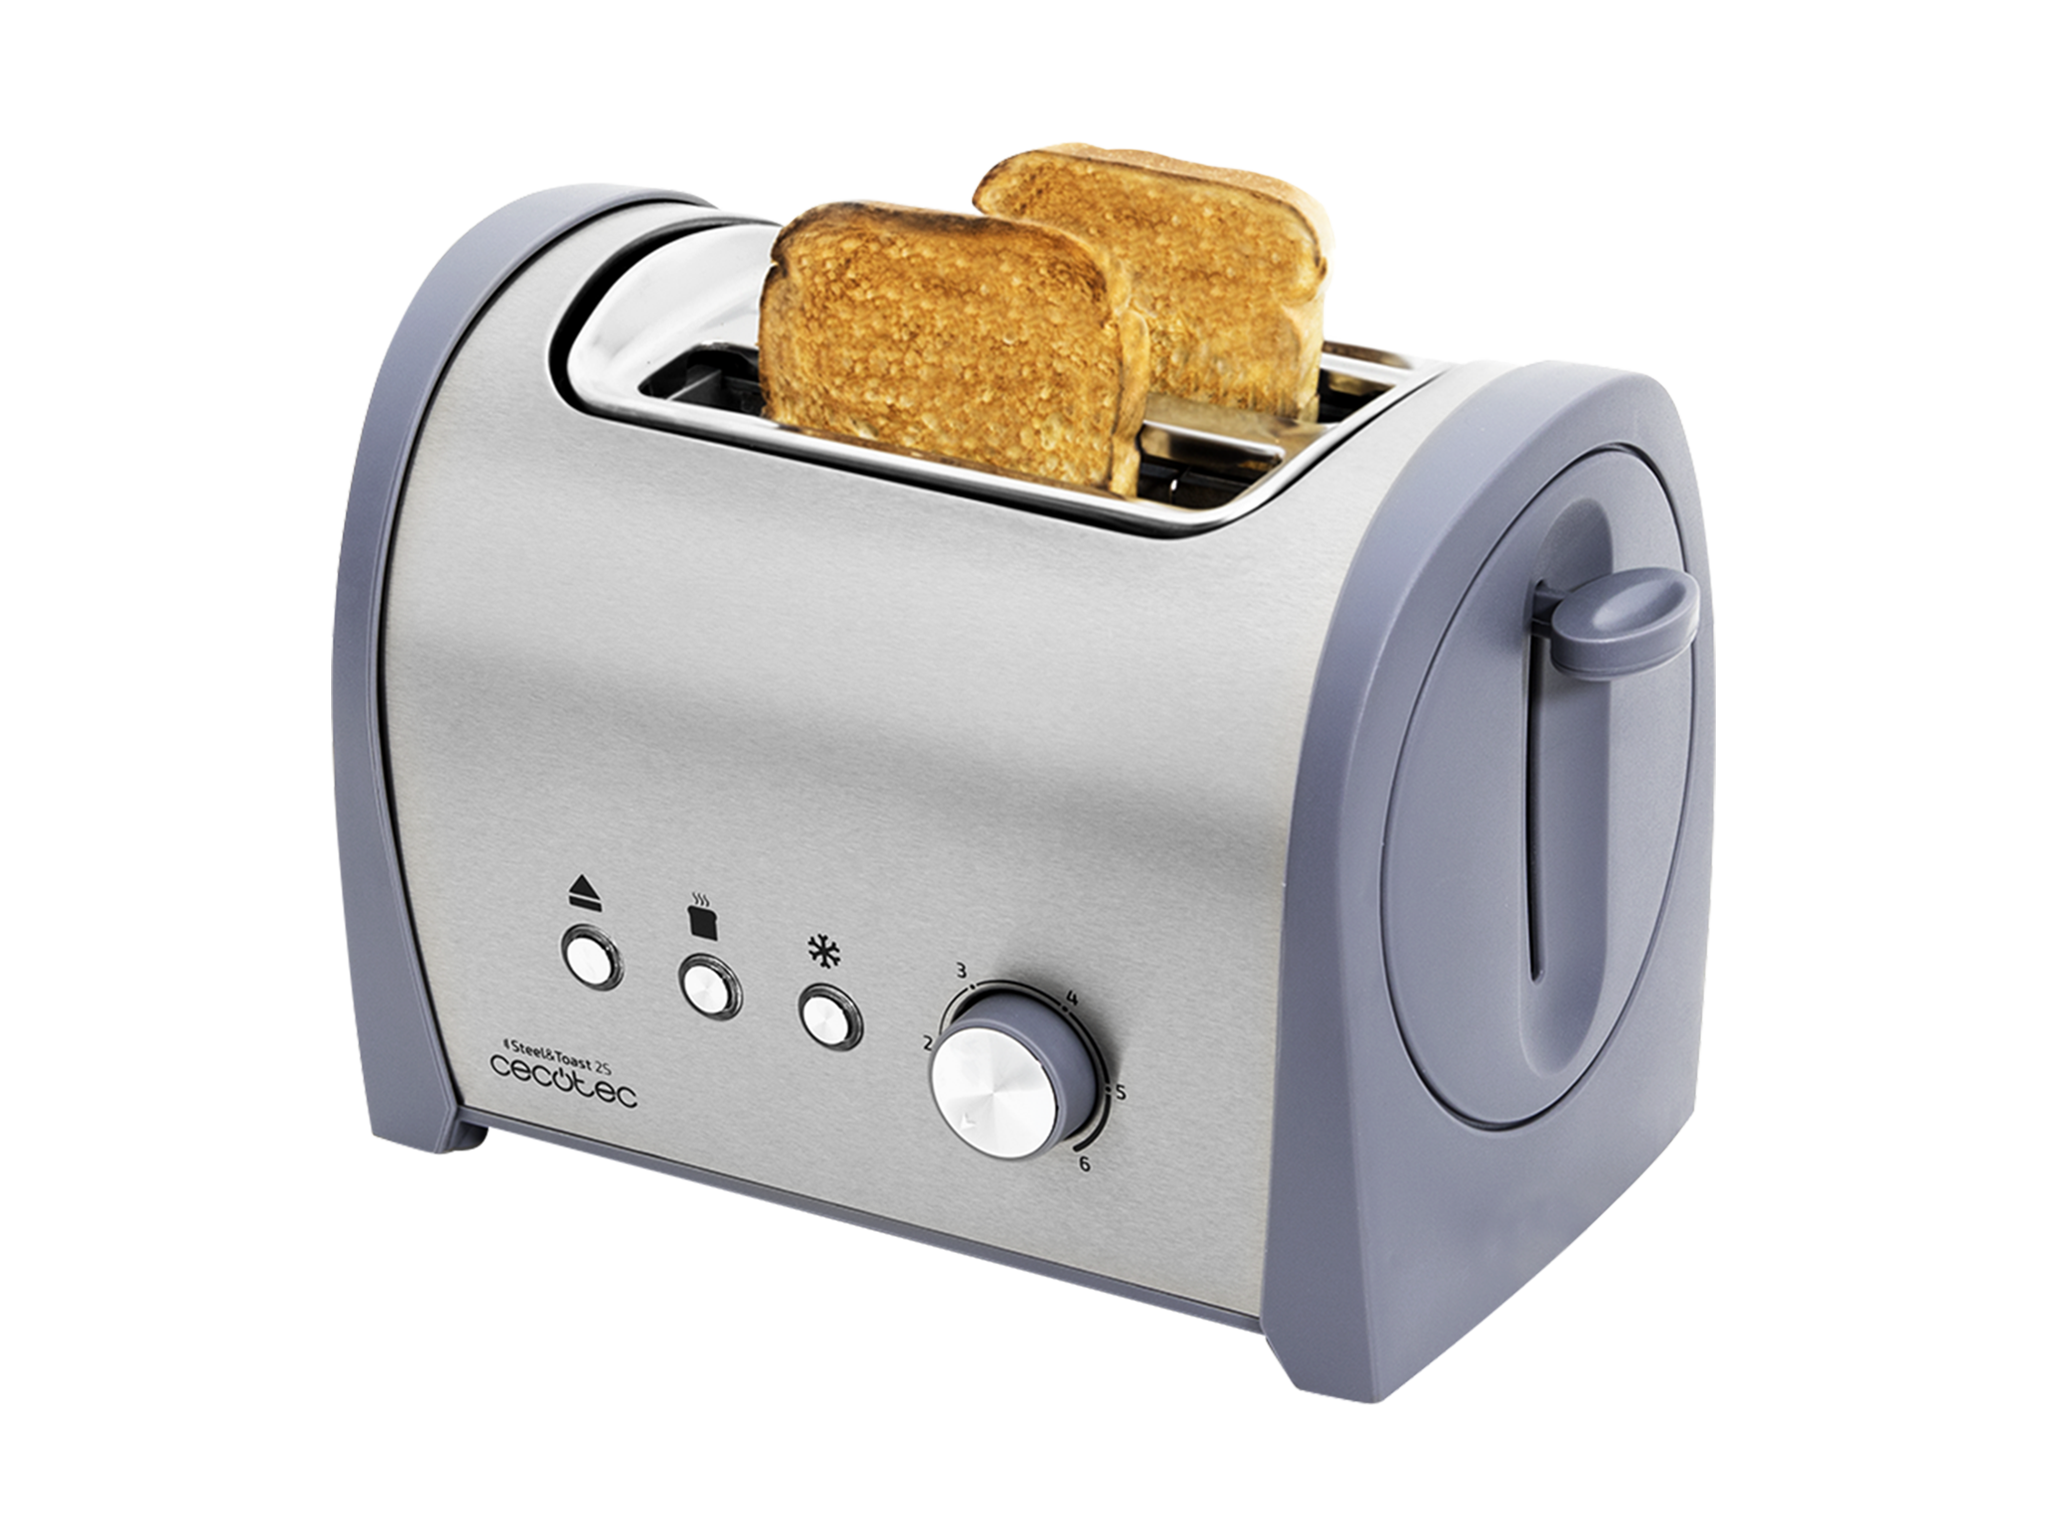 Tostapane  Acciaio Steel&Toast 2 S. 6 livelli di potenza, capienza per 2 toast, 3 funzioni (tostare, riscaldare, scongelare), include supporto per prodotti da forno, cassettino raccoglibriciole, 800 W